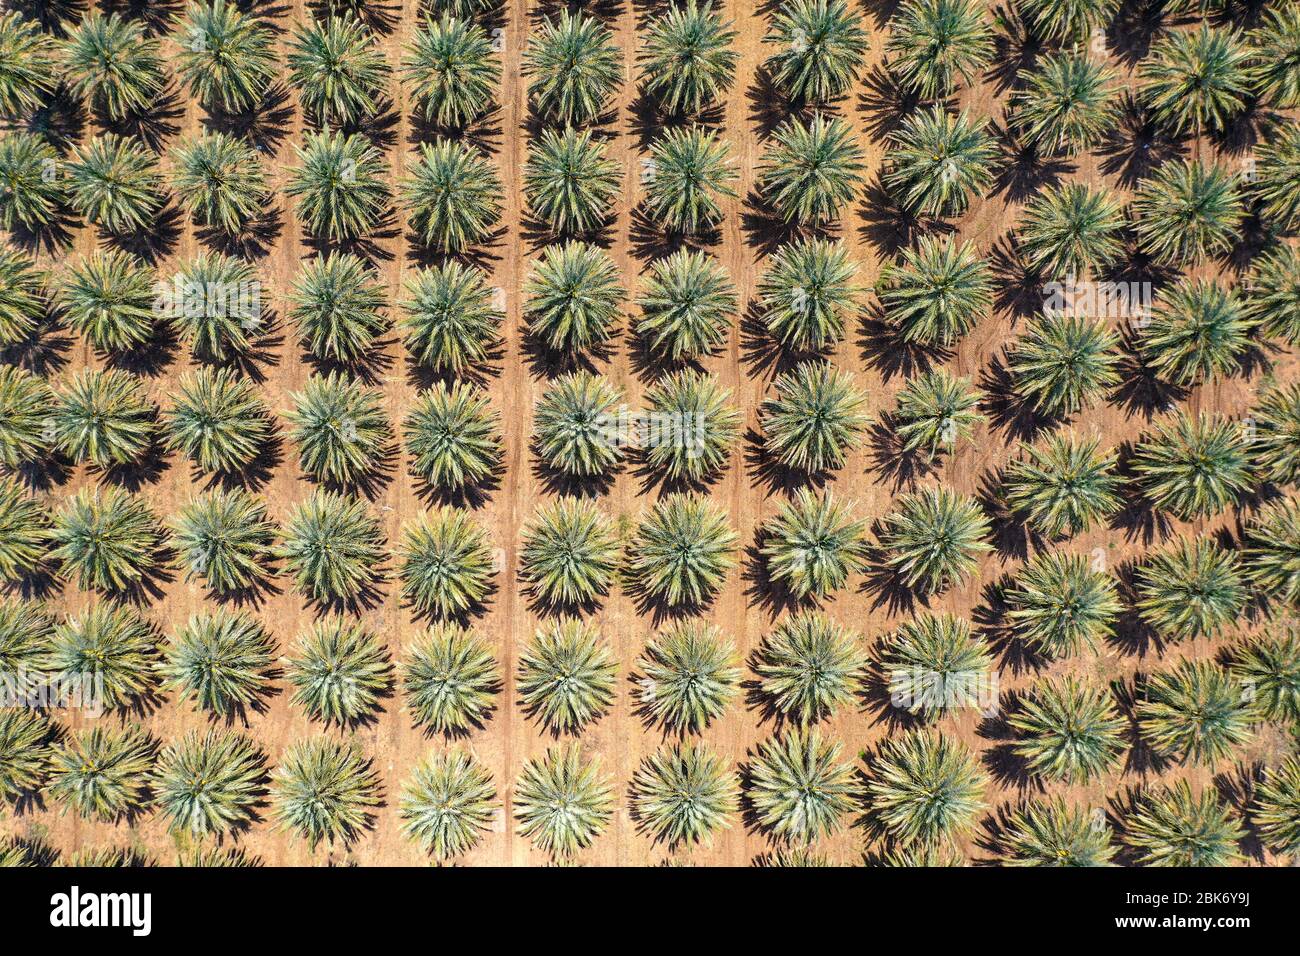 Vista aerea dall'alto di una grande piantagione di Date Palms nel deserto. Foto Stock